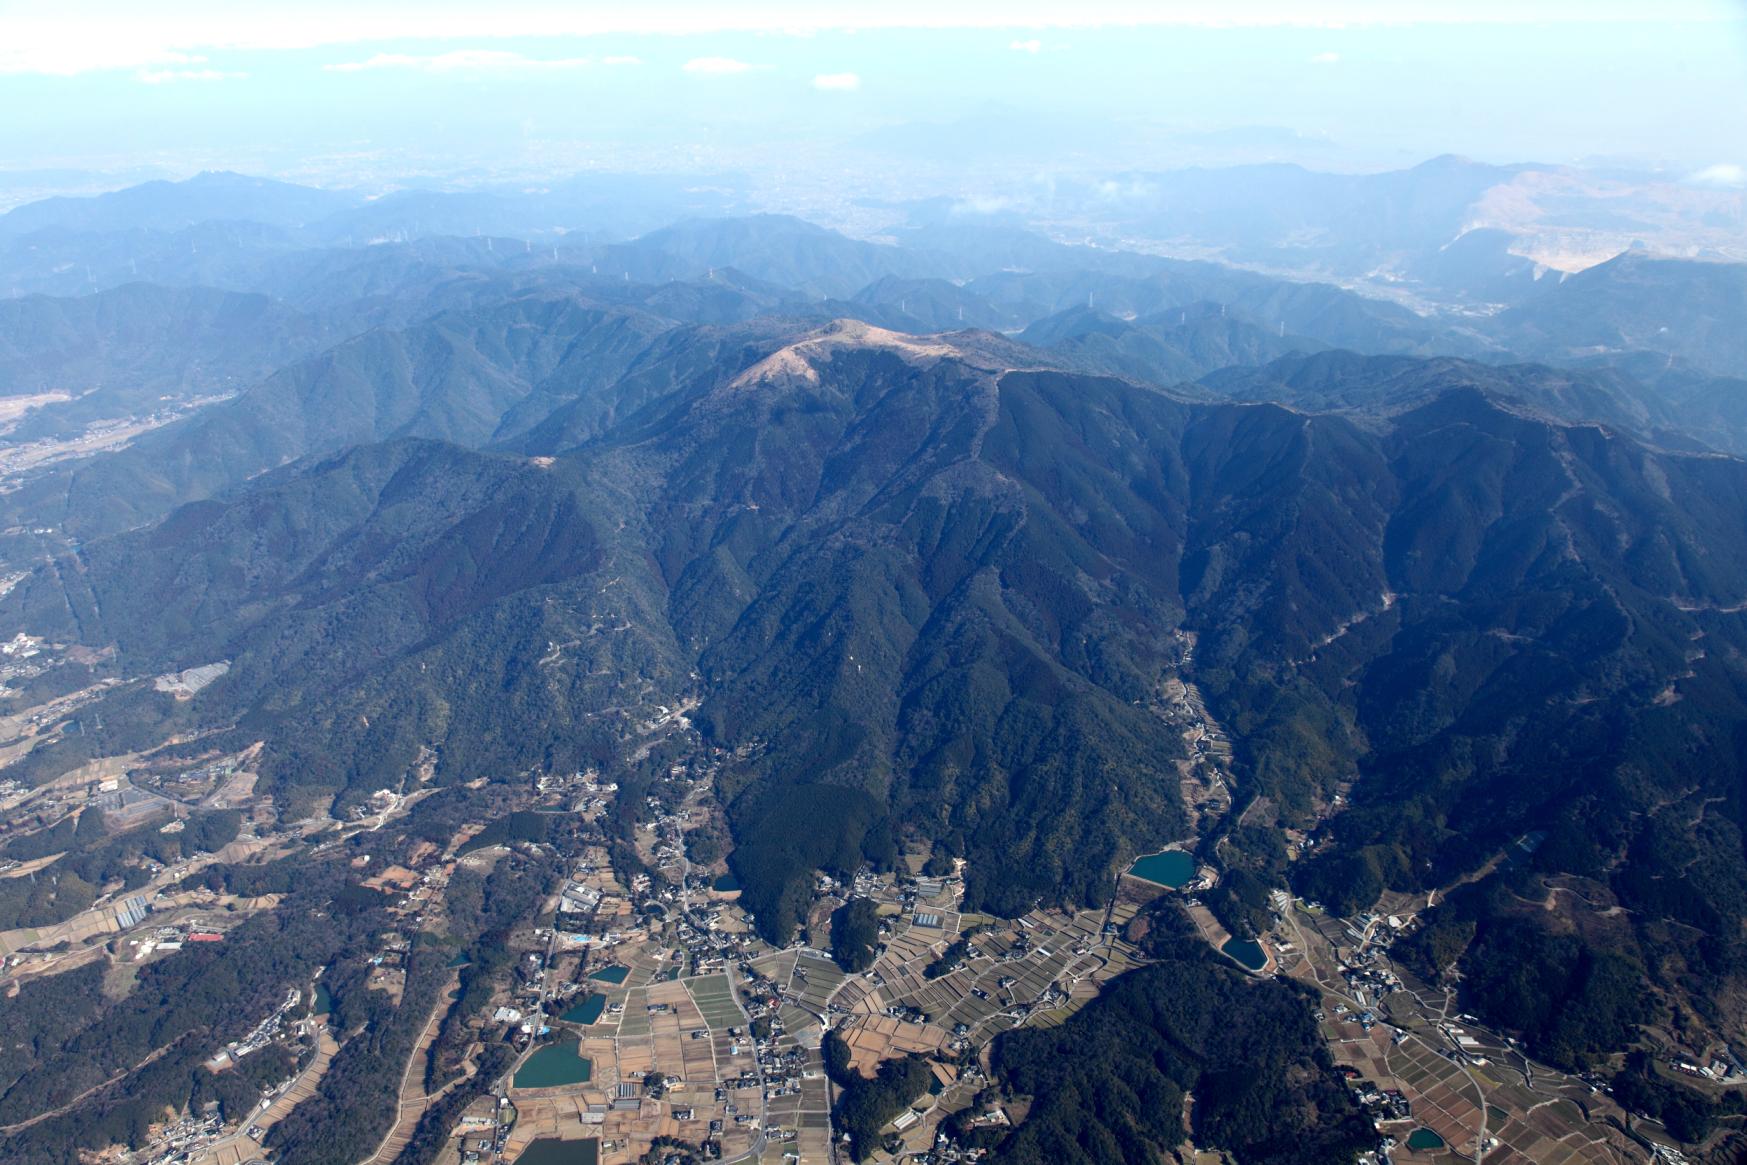 시라이토 폭포, 성터 등 볼거리 가득한 후쿠치야마 산·다카토리야마 산